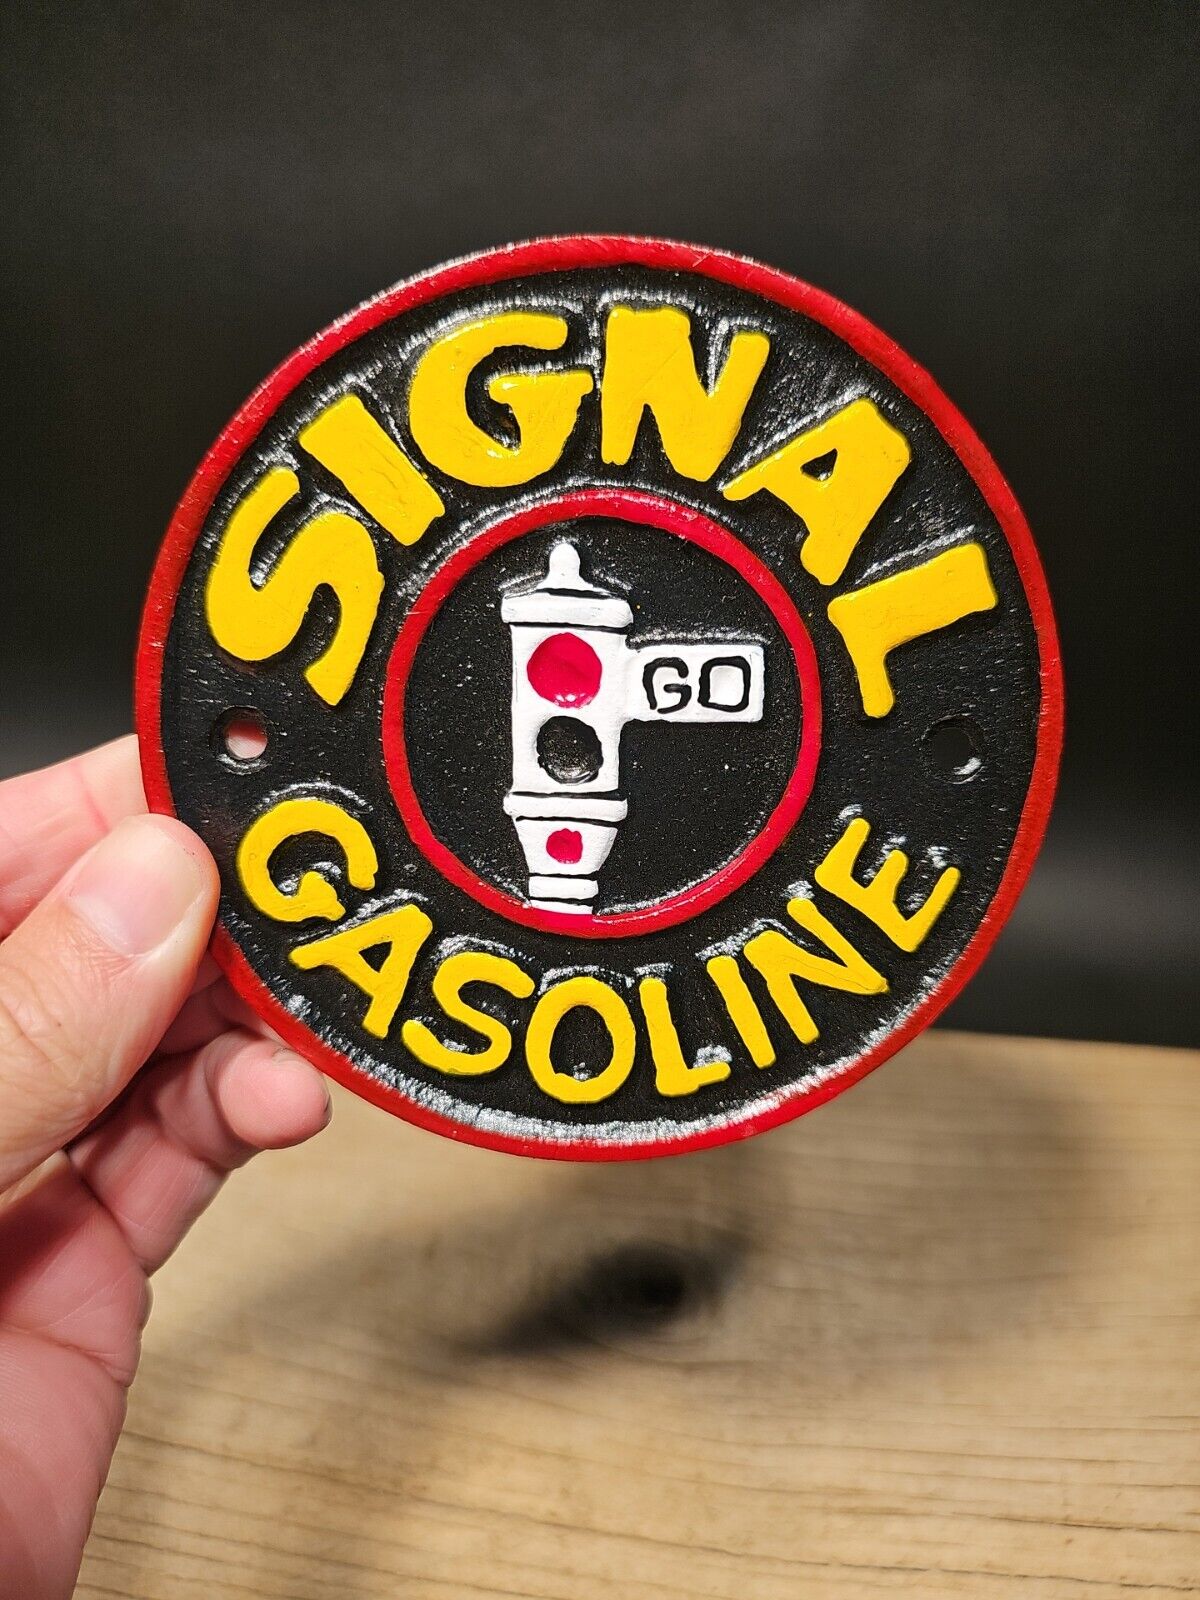 Antique Vintage Style Cast Iron Signal Gasoline Gas Oil Sign Plaque